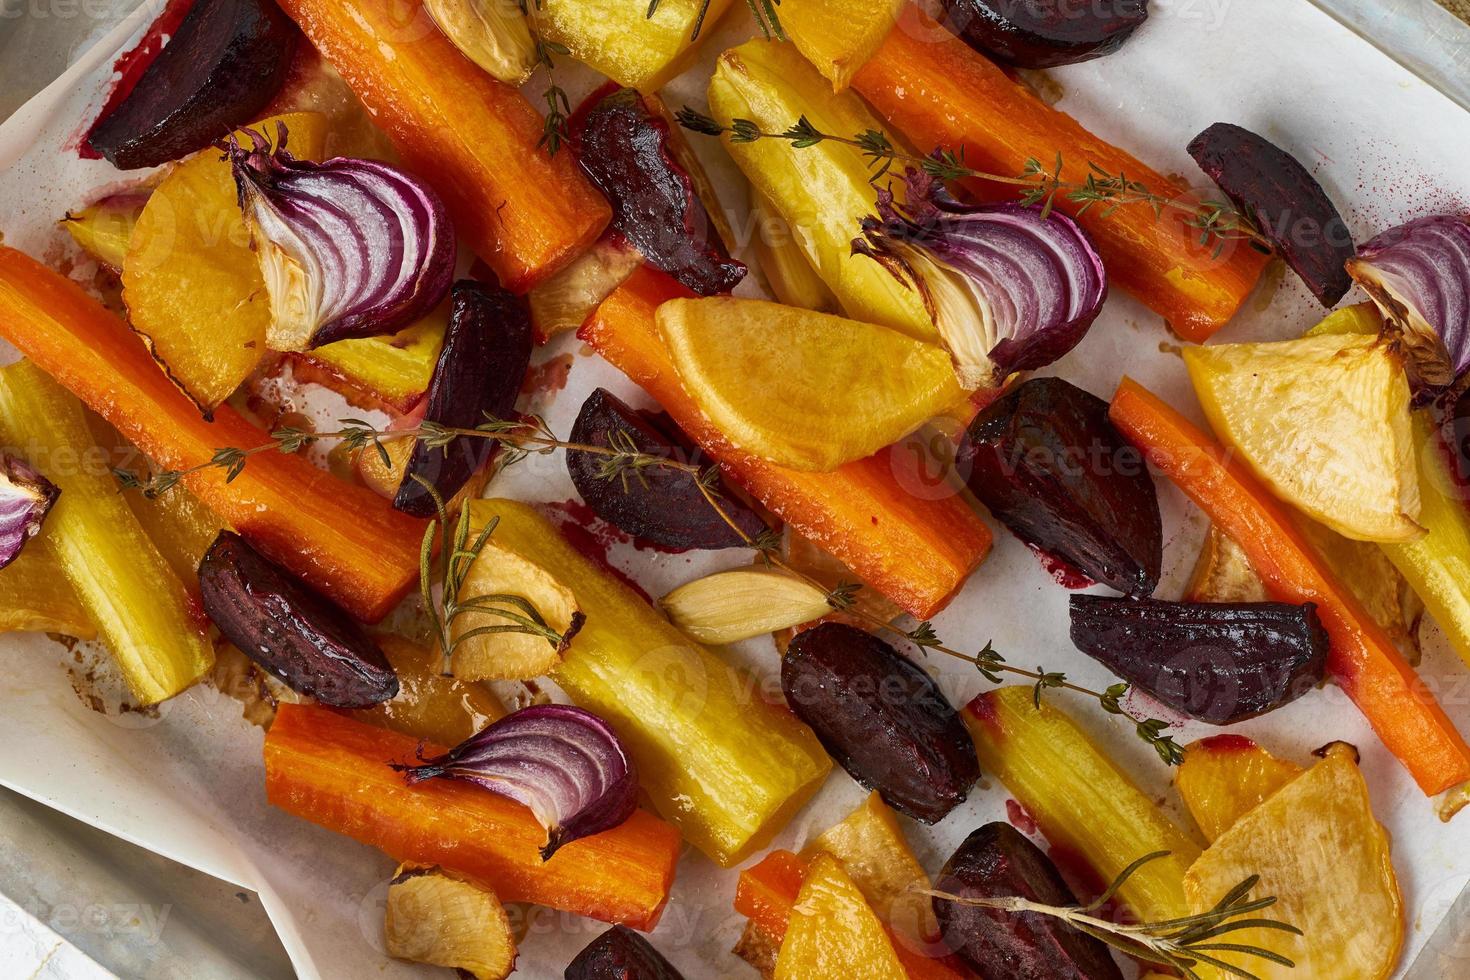 Buntes gebratenes Gemüse auf Tablett mit Pergament. Mischung aus Karotten, Rüben, Rüben foto